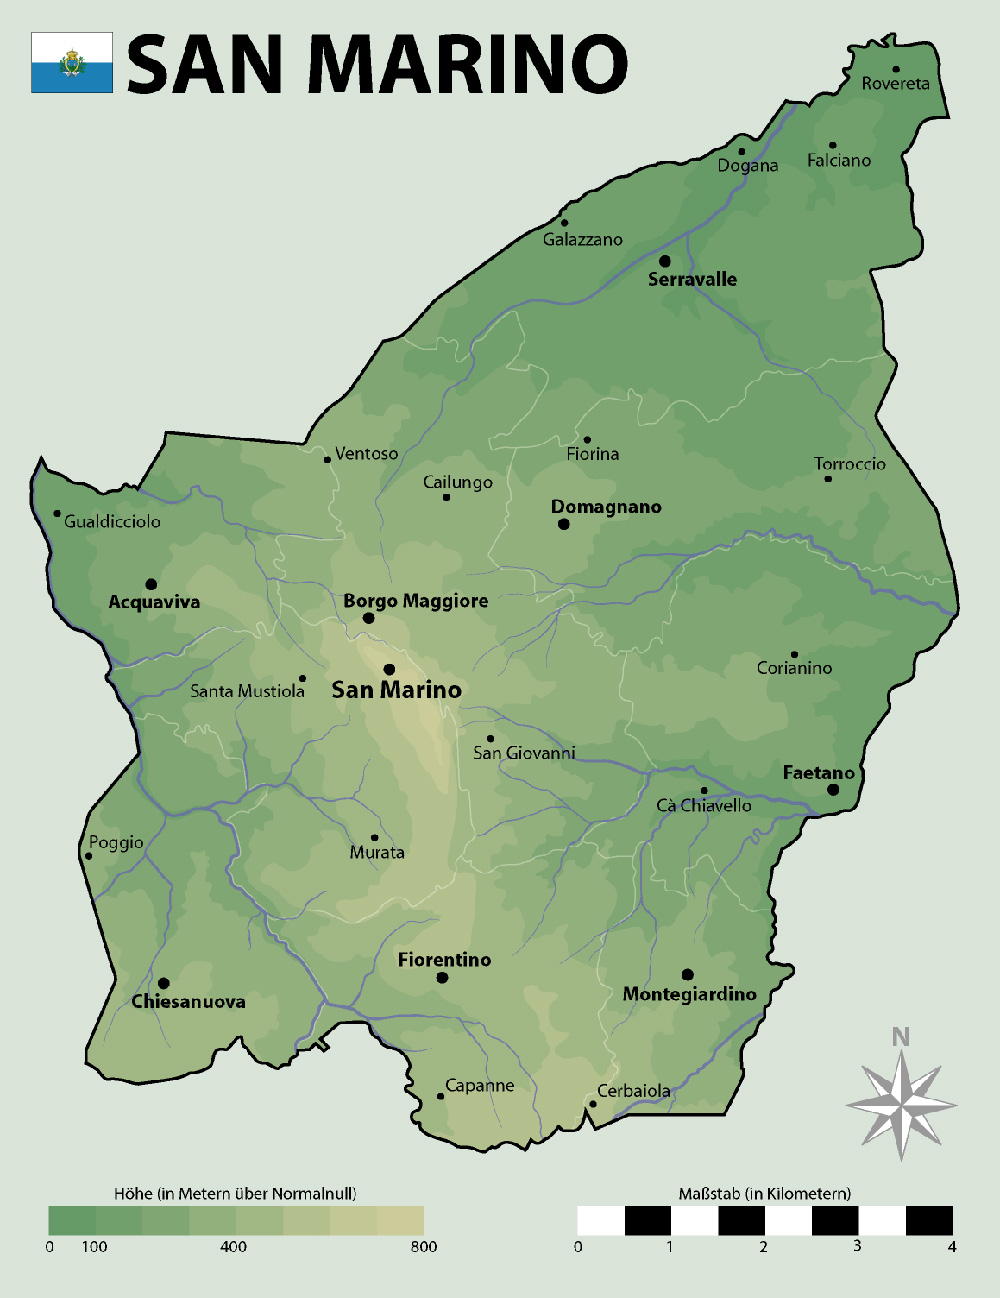 Mappa con le città San Marino